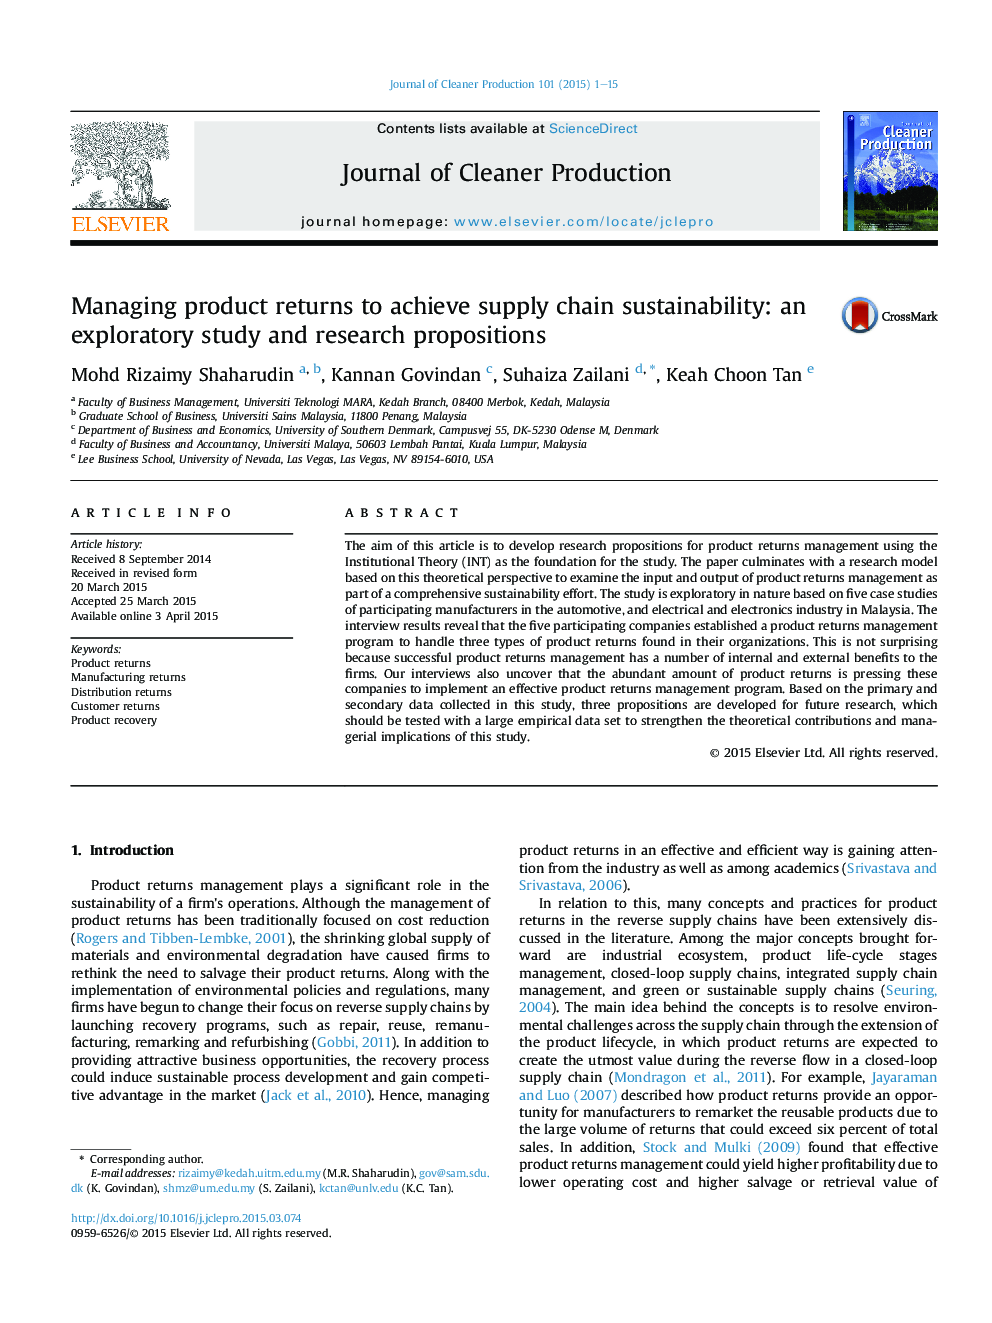 مدیریت بازده محصول برای دستیابی به پایداری زنجیره تامین: یک مطالعه اکتشافی و پیشنهادات تحقیقاتی 